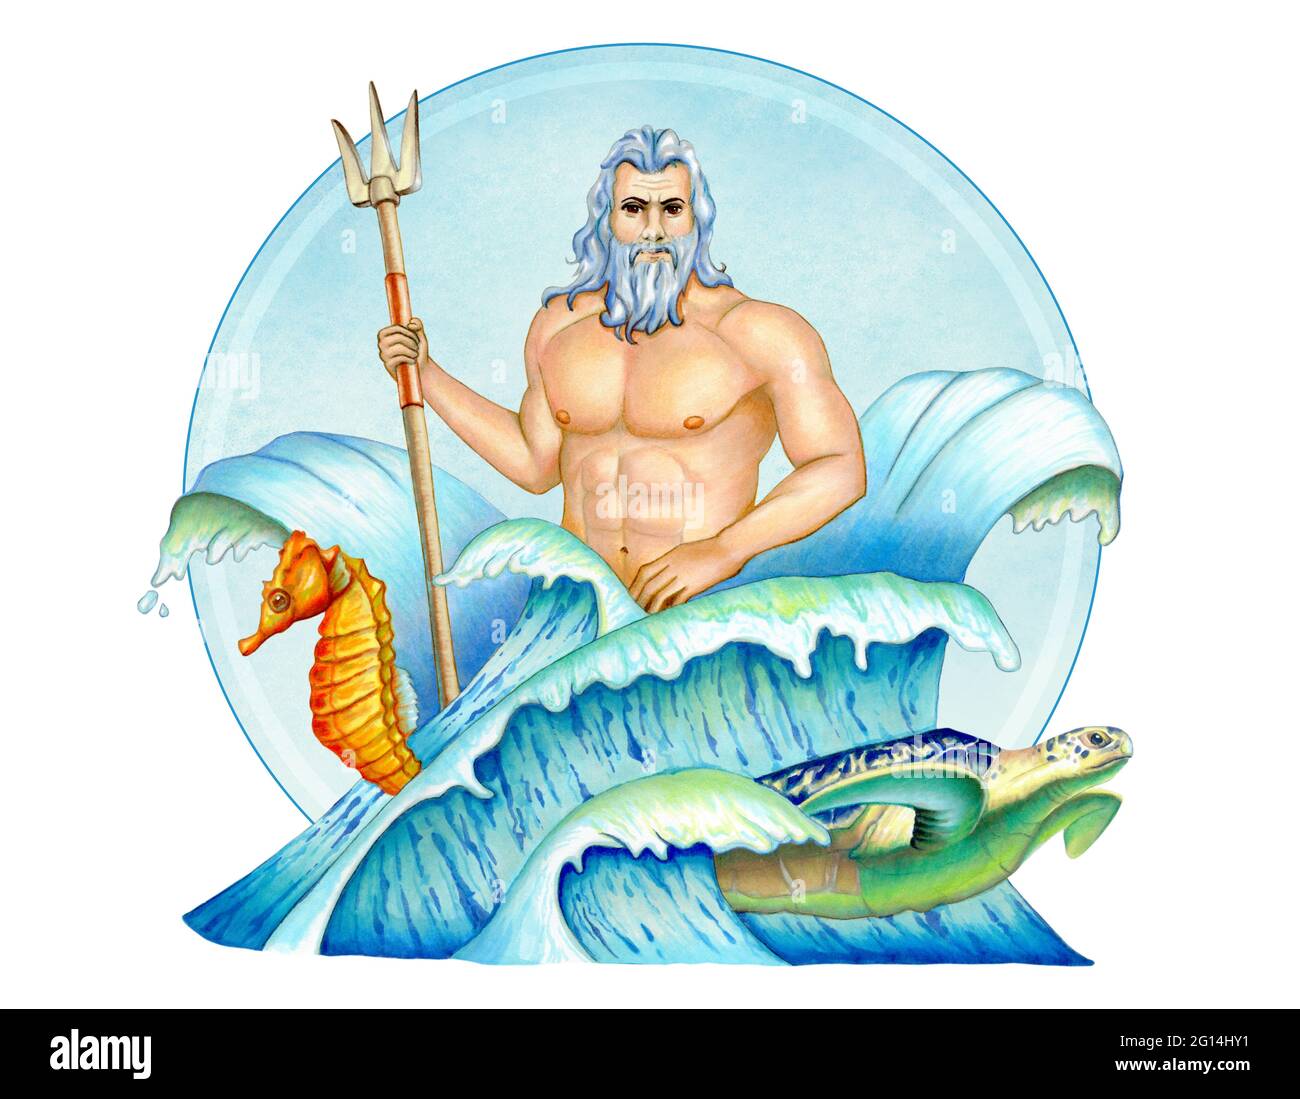 Poseidon, griechischer gott des Meeres, in einer Komposition mit Wellen,  einem Seepferd und einer Meeresschildkröte. Darstellung gemischter Medien  Stockfotografie - Alamy